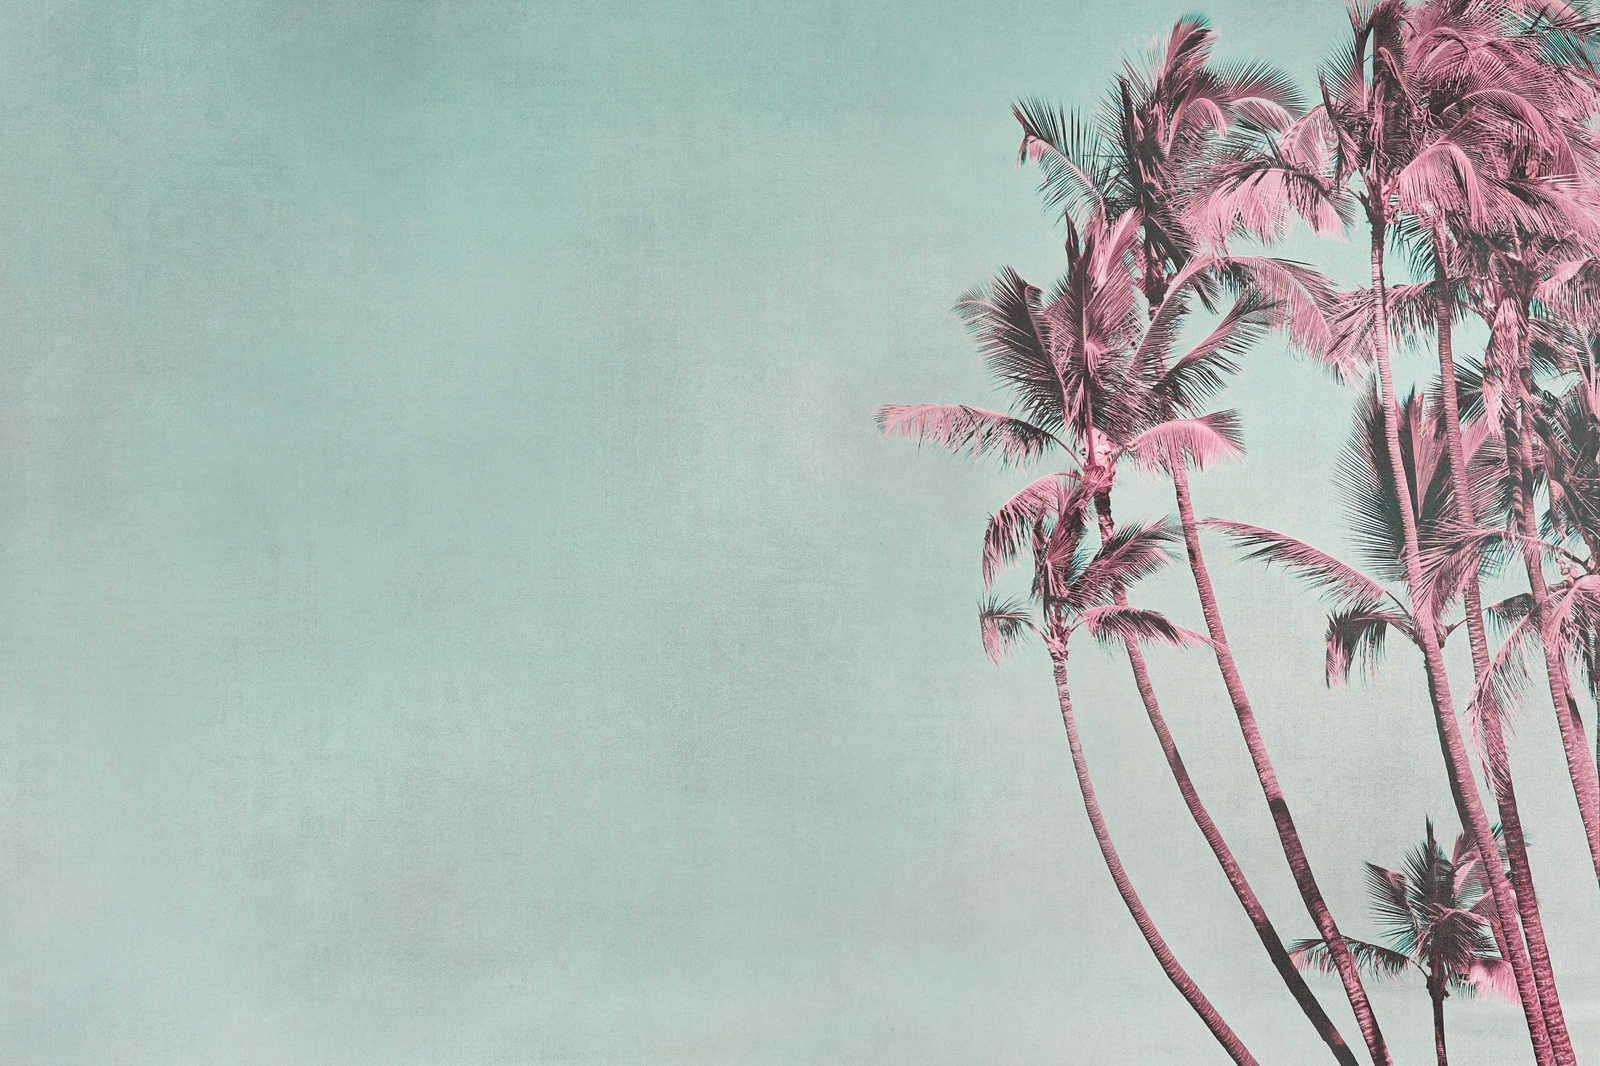             Palmiers toile Tropical Breeze en turquoise & rose - 0,90 m x 0,60 m
        